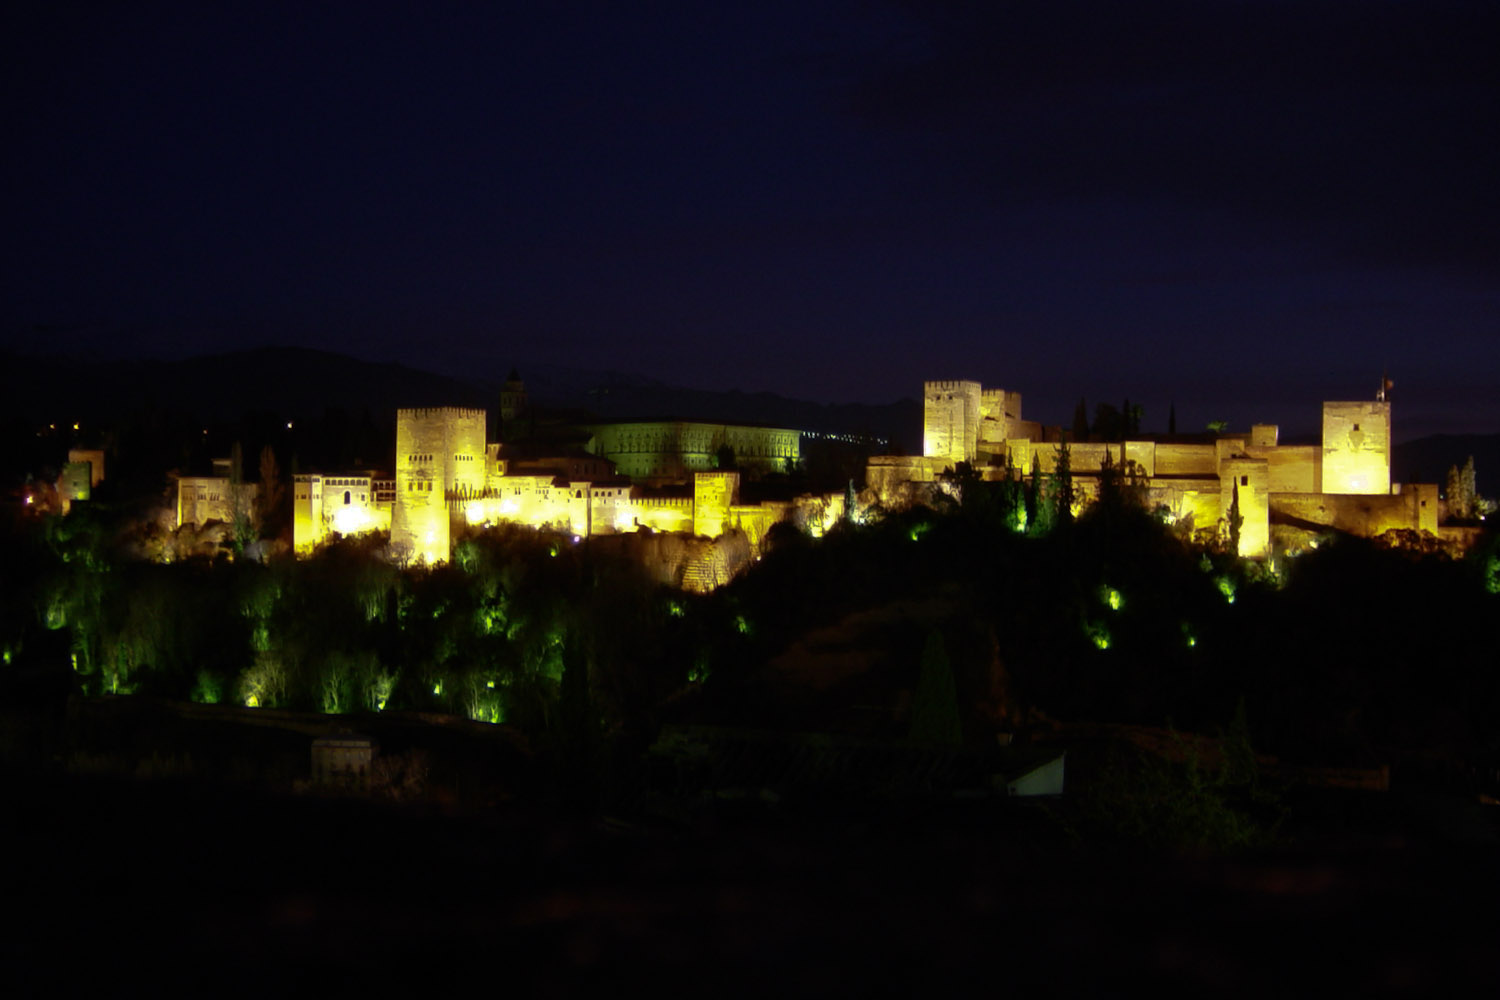 La Alhambra de Granada, de noche, capturada con una cámara Sony Cybershot de 3 MP.